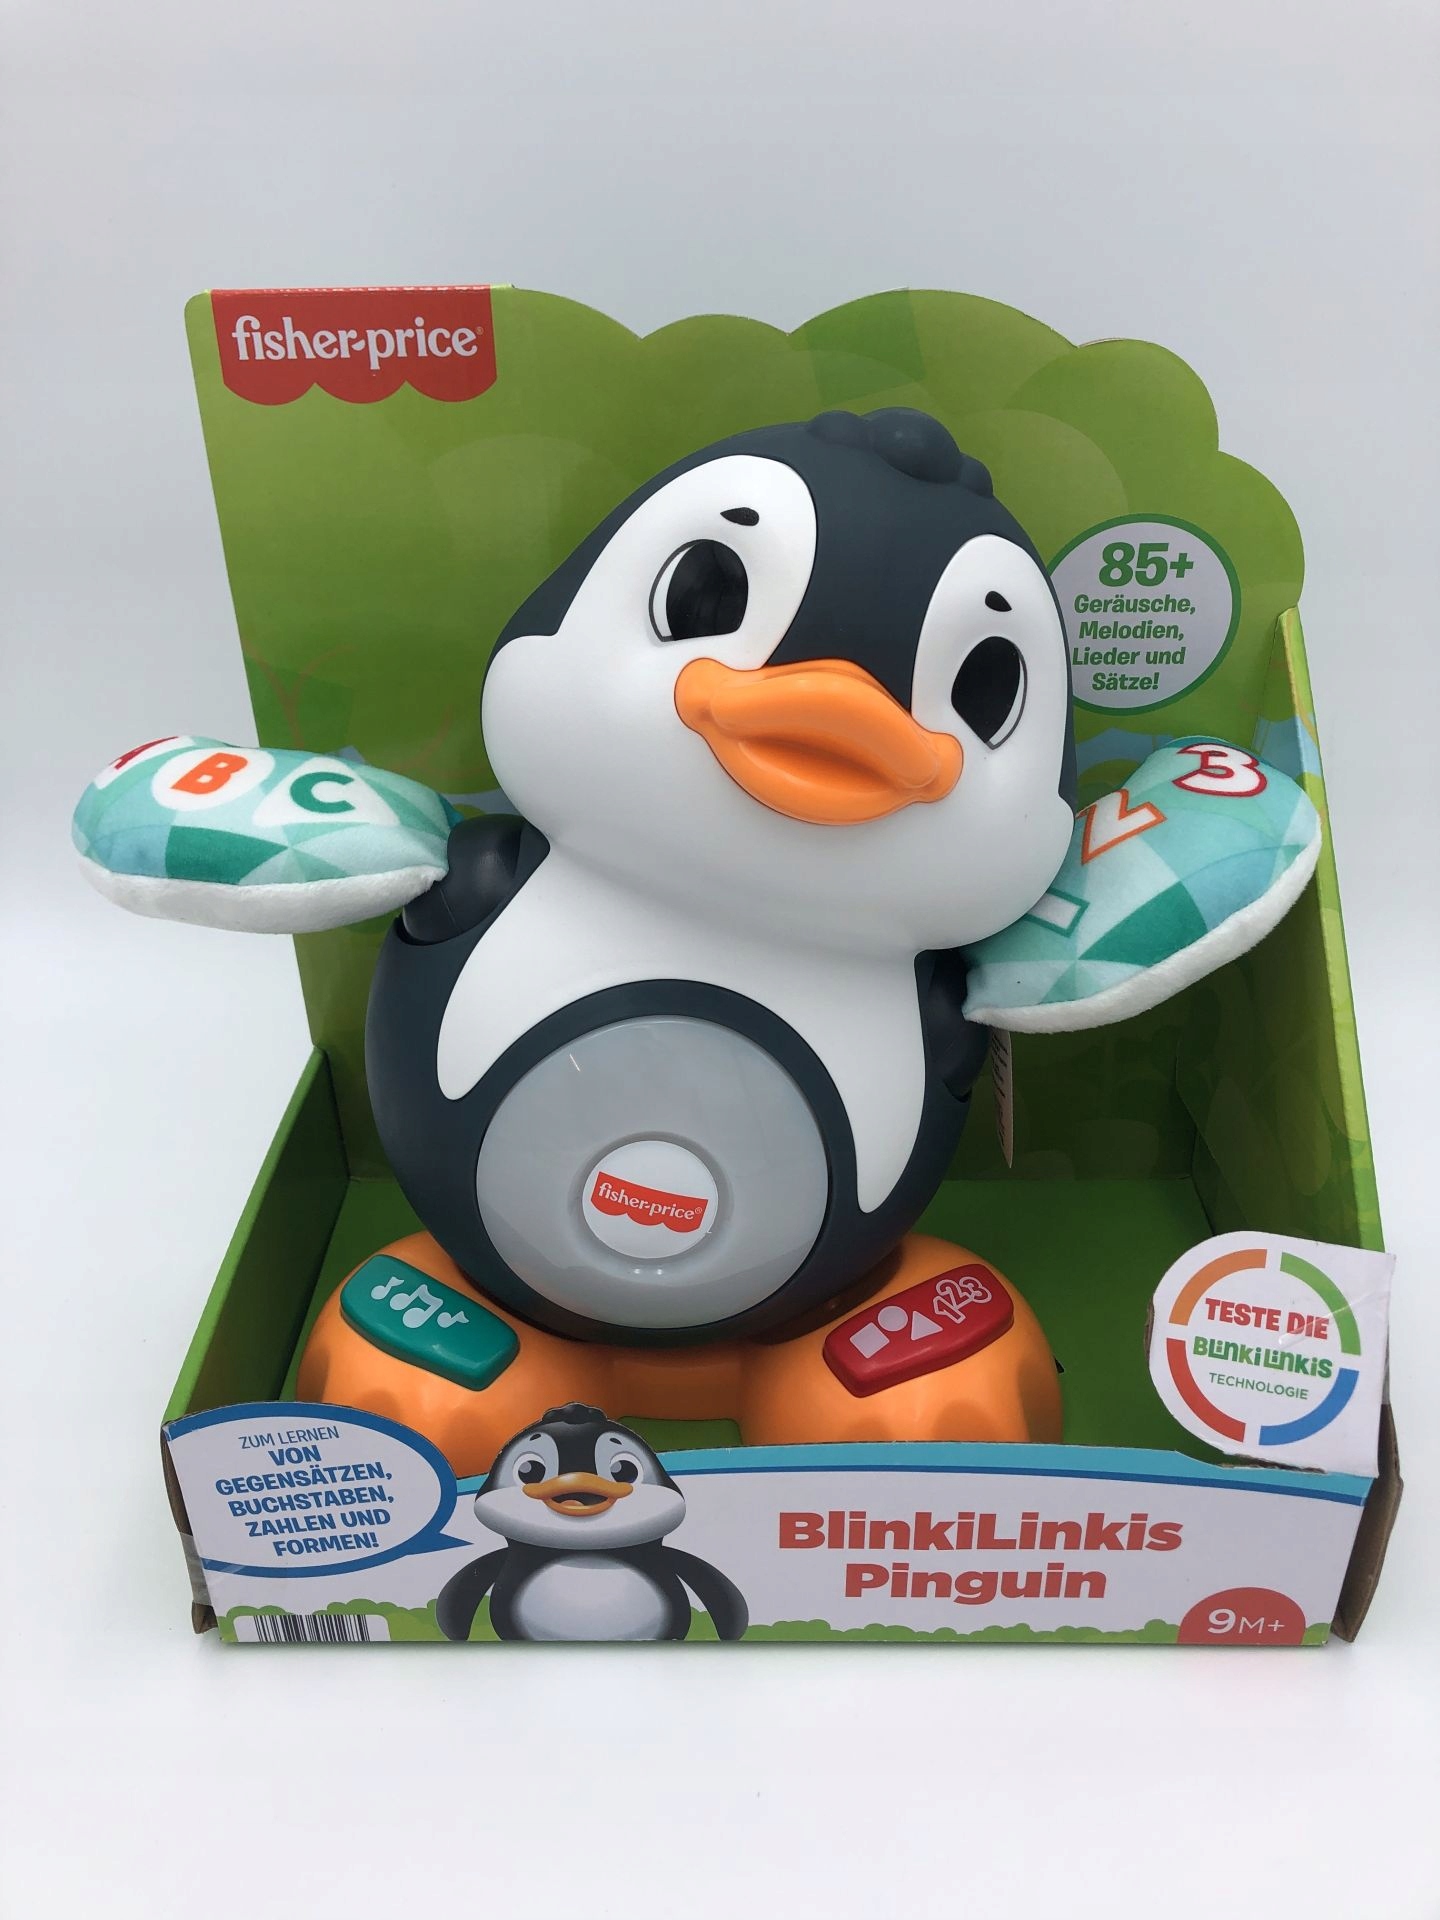 Fisher-Price BlinkiLinki's Pinguin